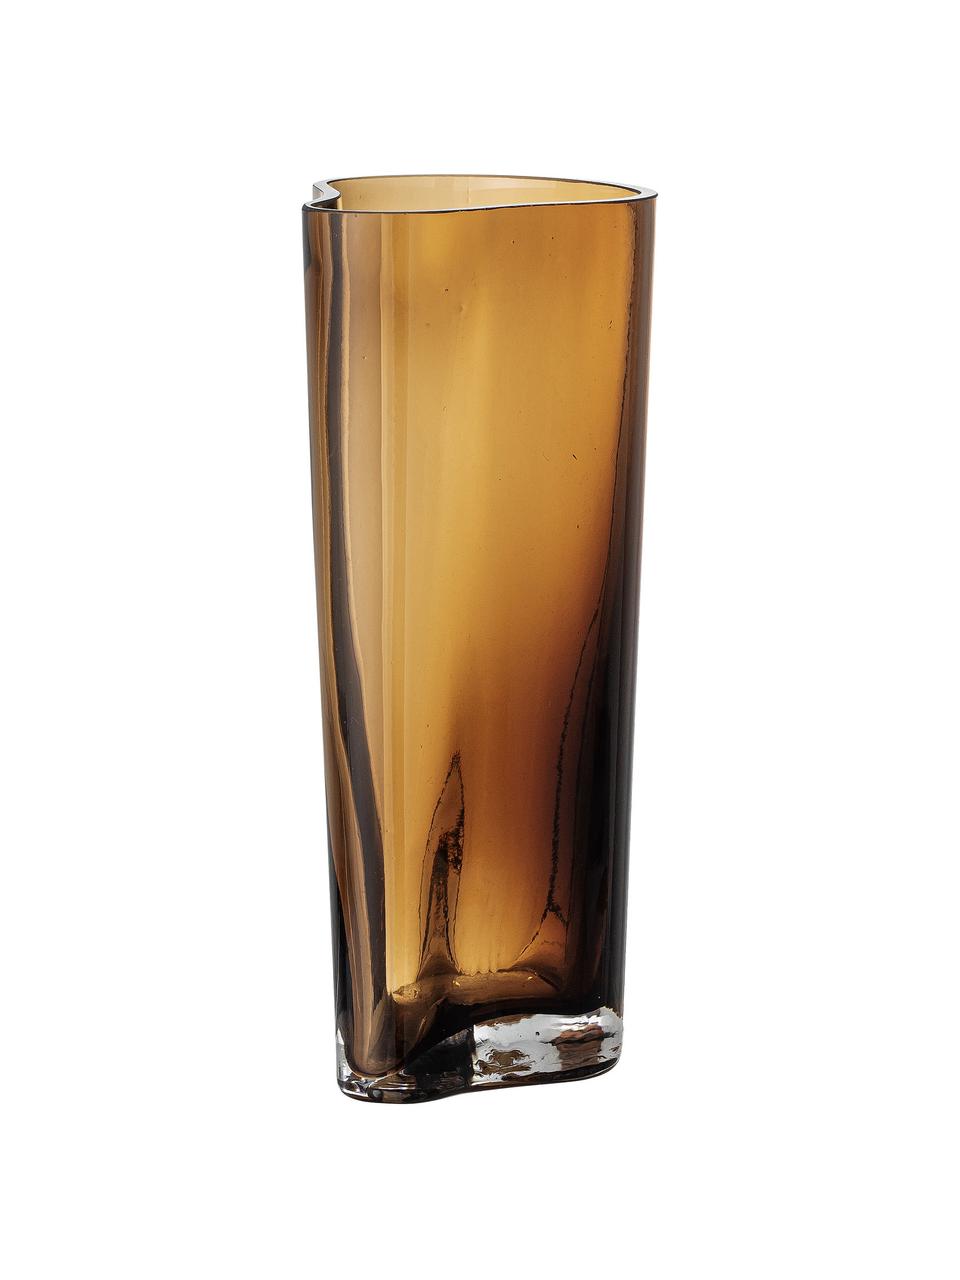 Glazen vaas Benia in bruin, Glas, Bruin, 12 x 20 cm